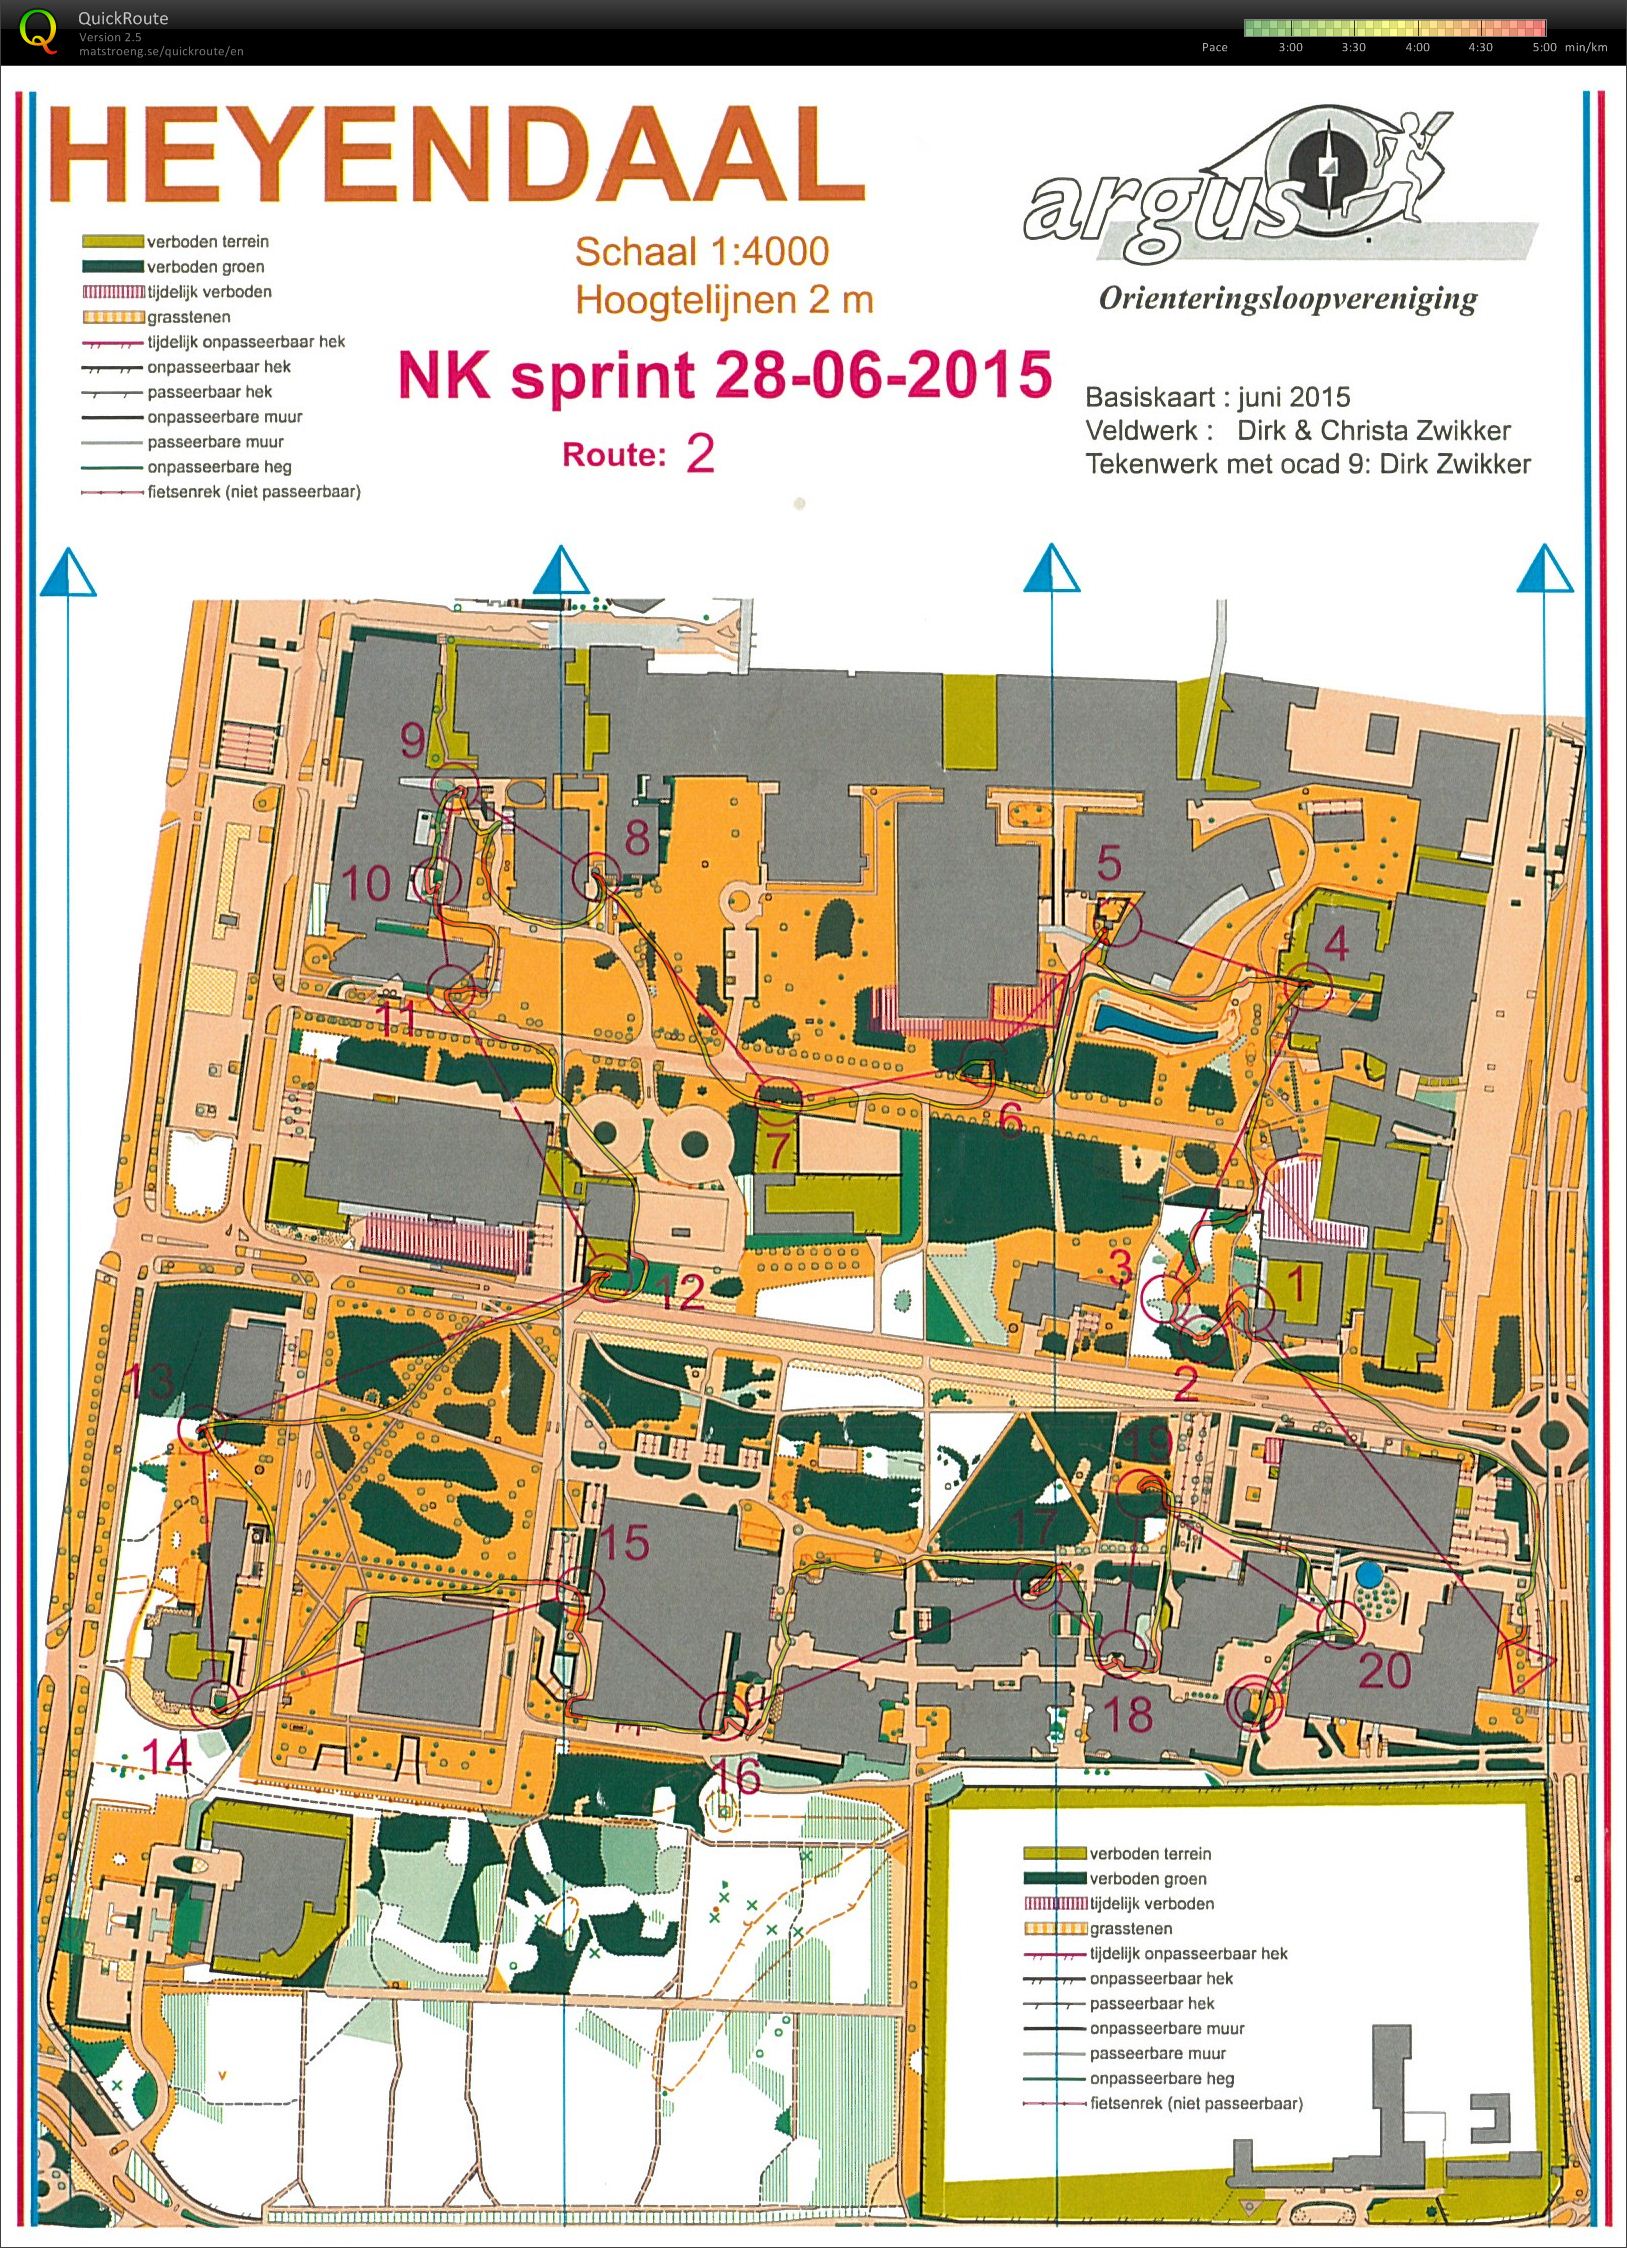 NK Sprint Heyendaal (28-06-2015)